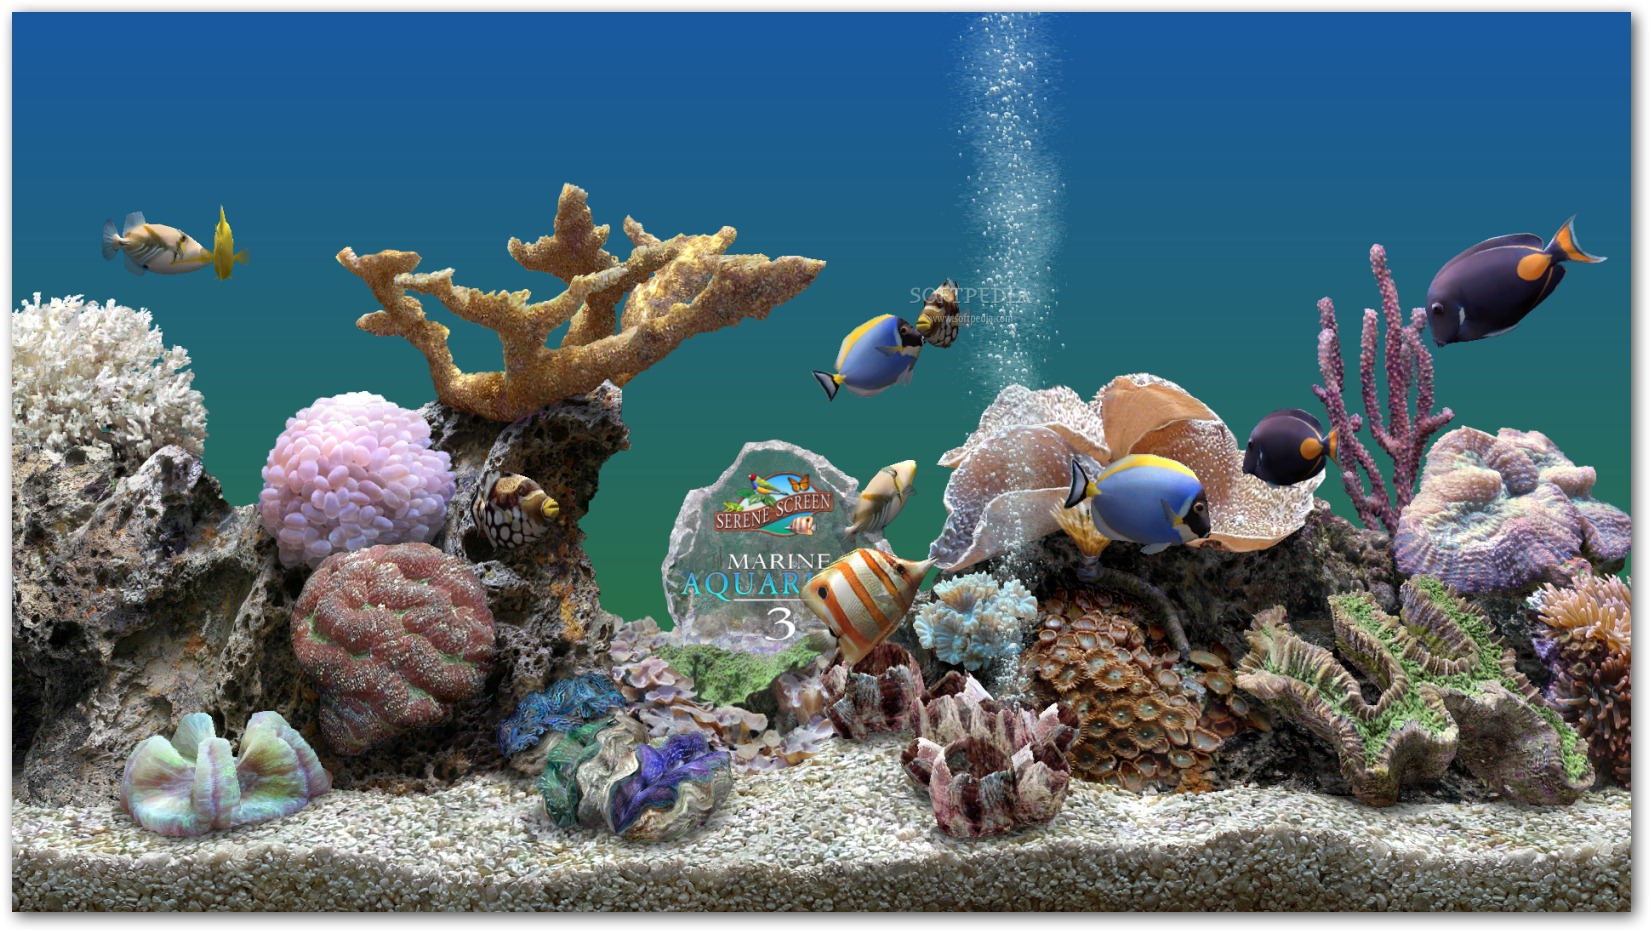 Marine Aquarium   With Marine Aquarium you are able to view